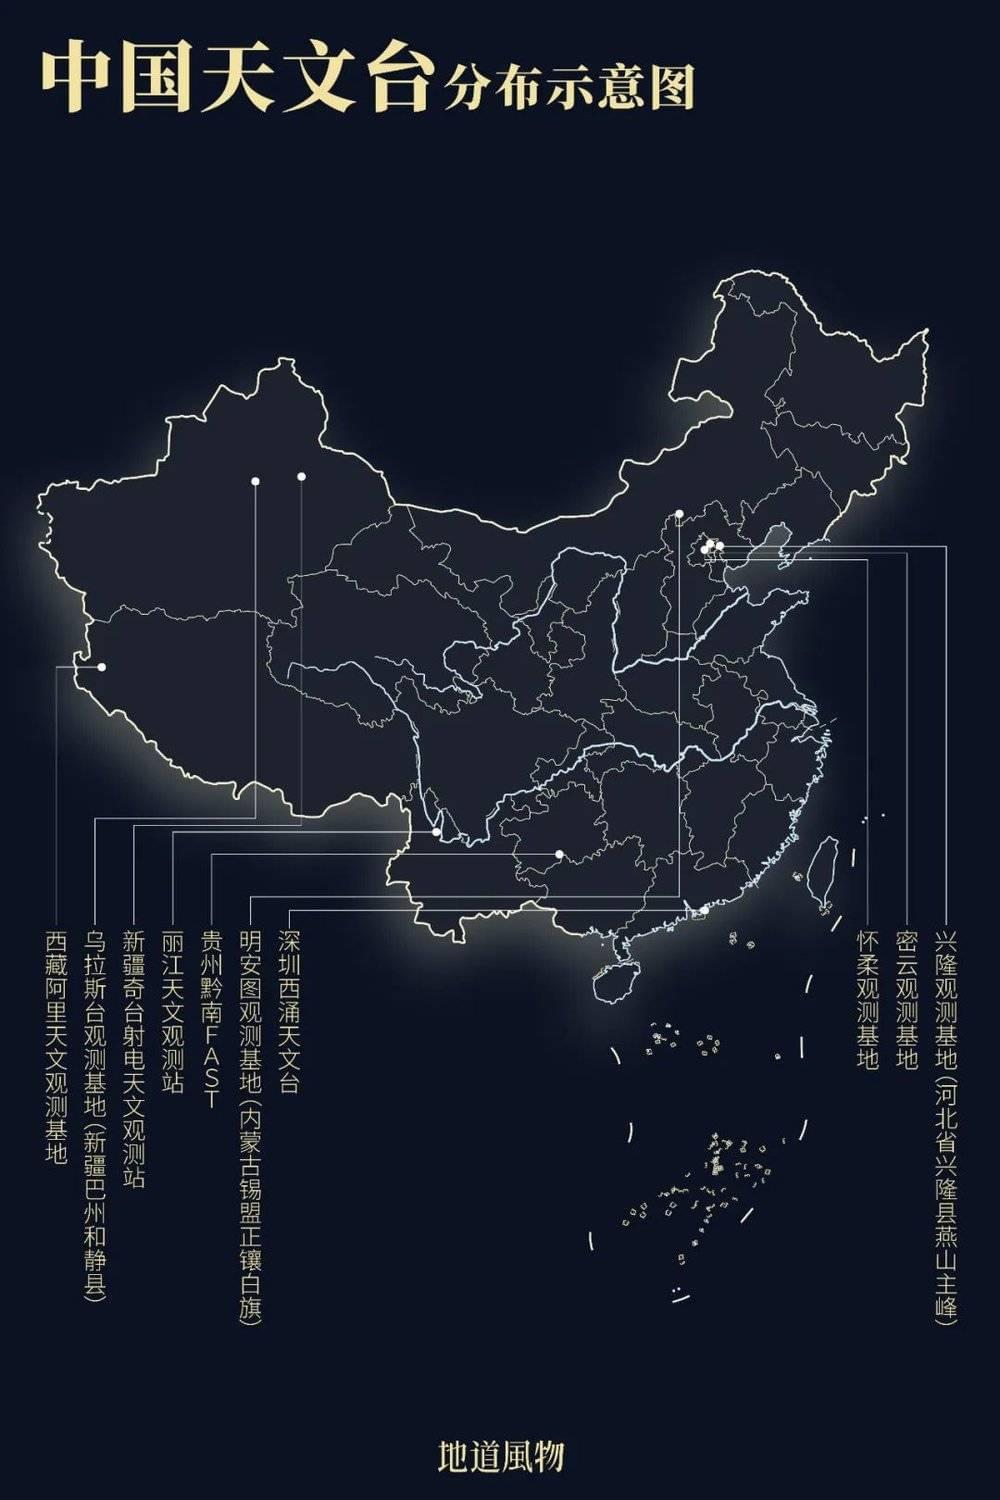 中国主要的天文观测站，都分布在这些地方。制图/程远